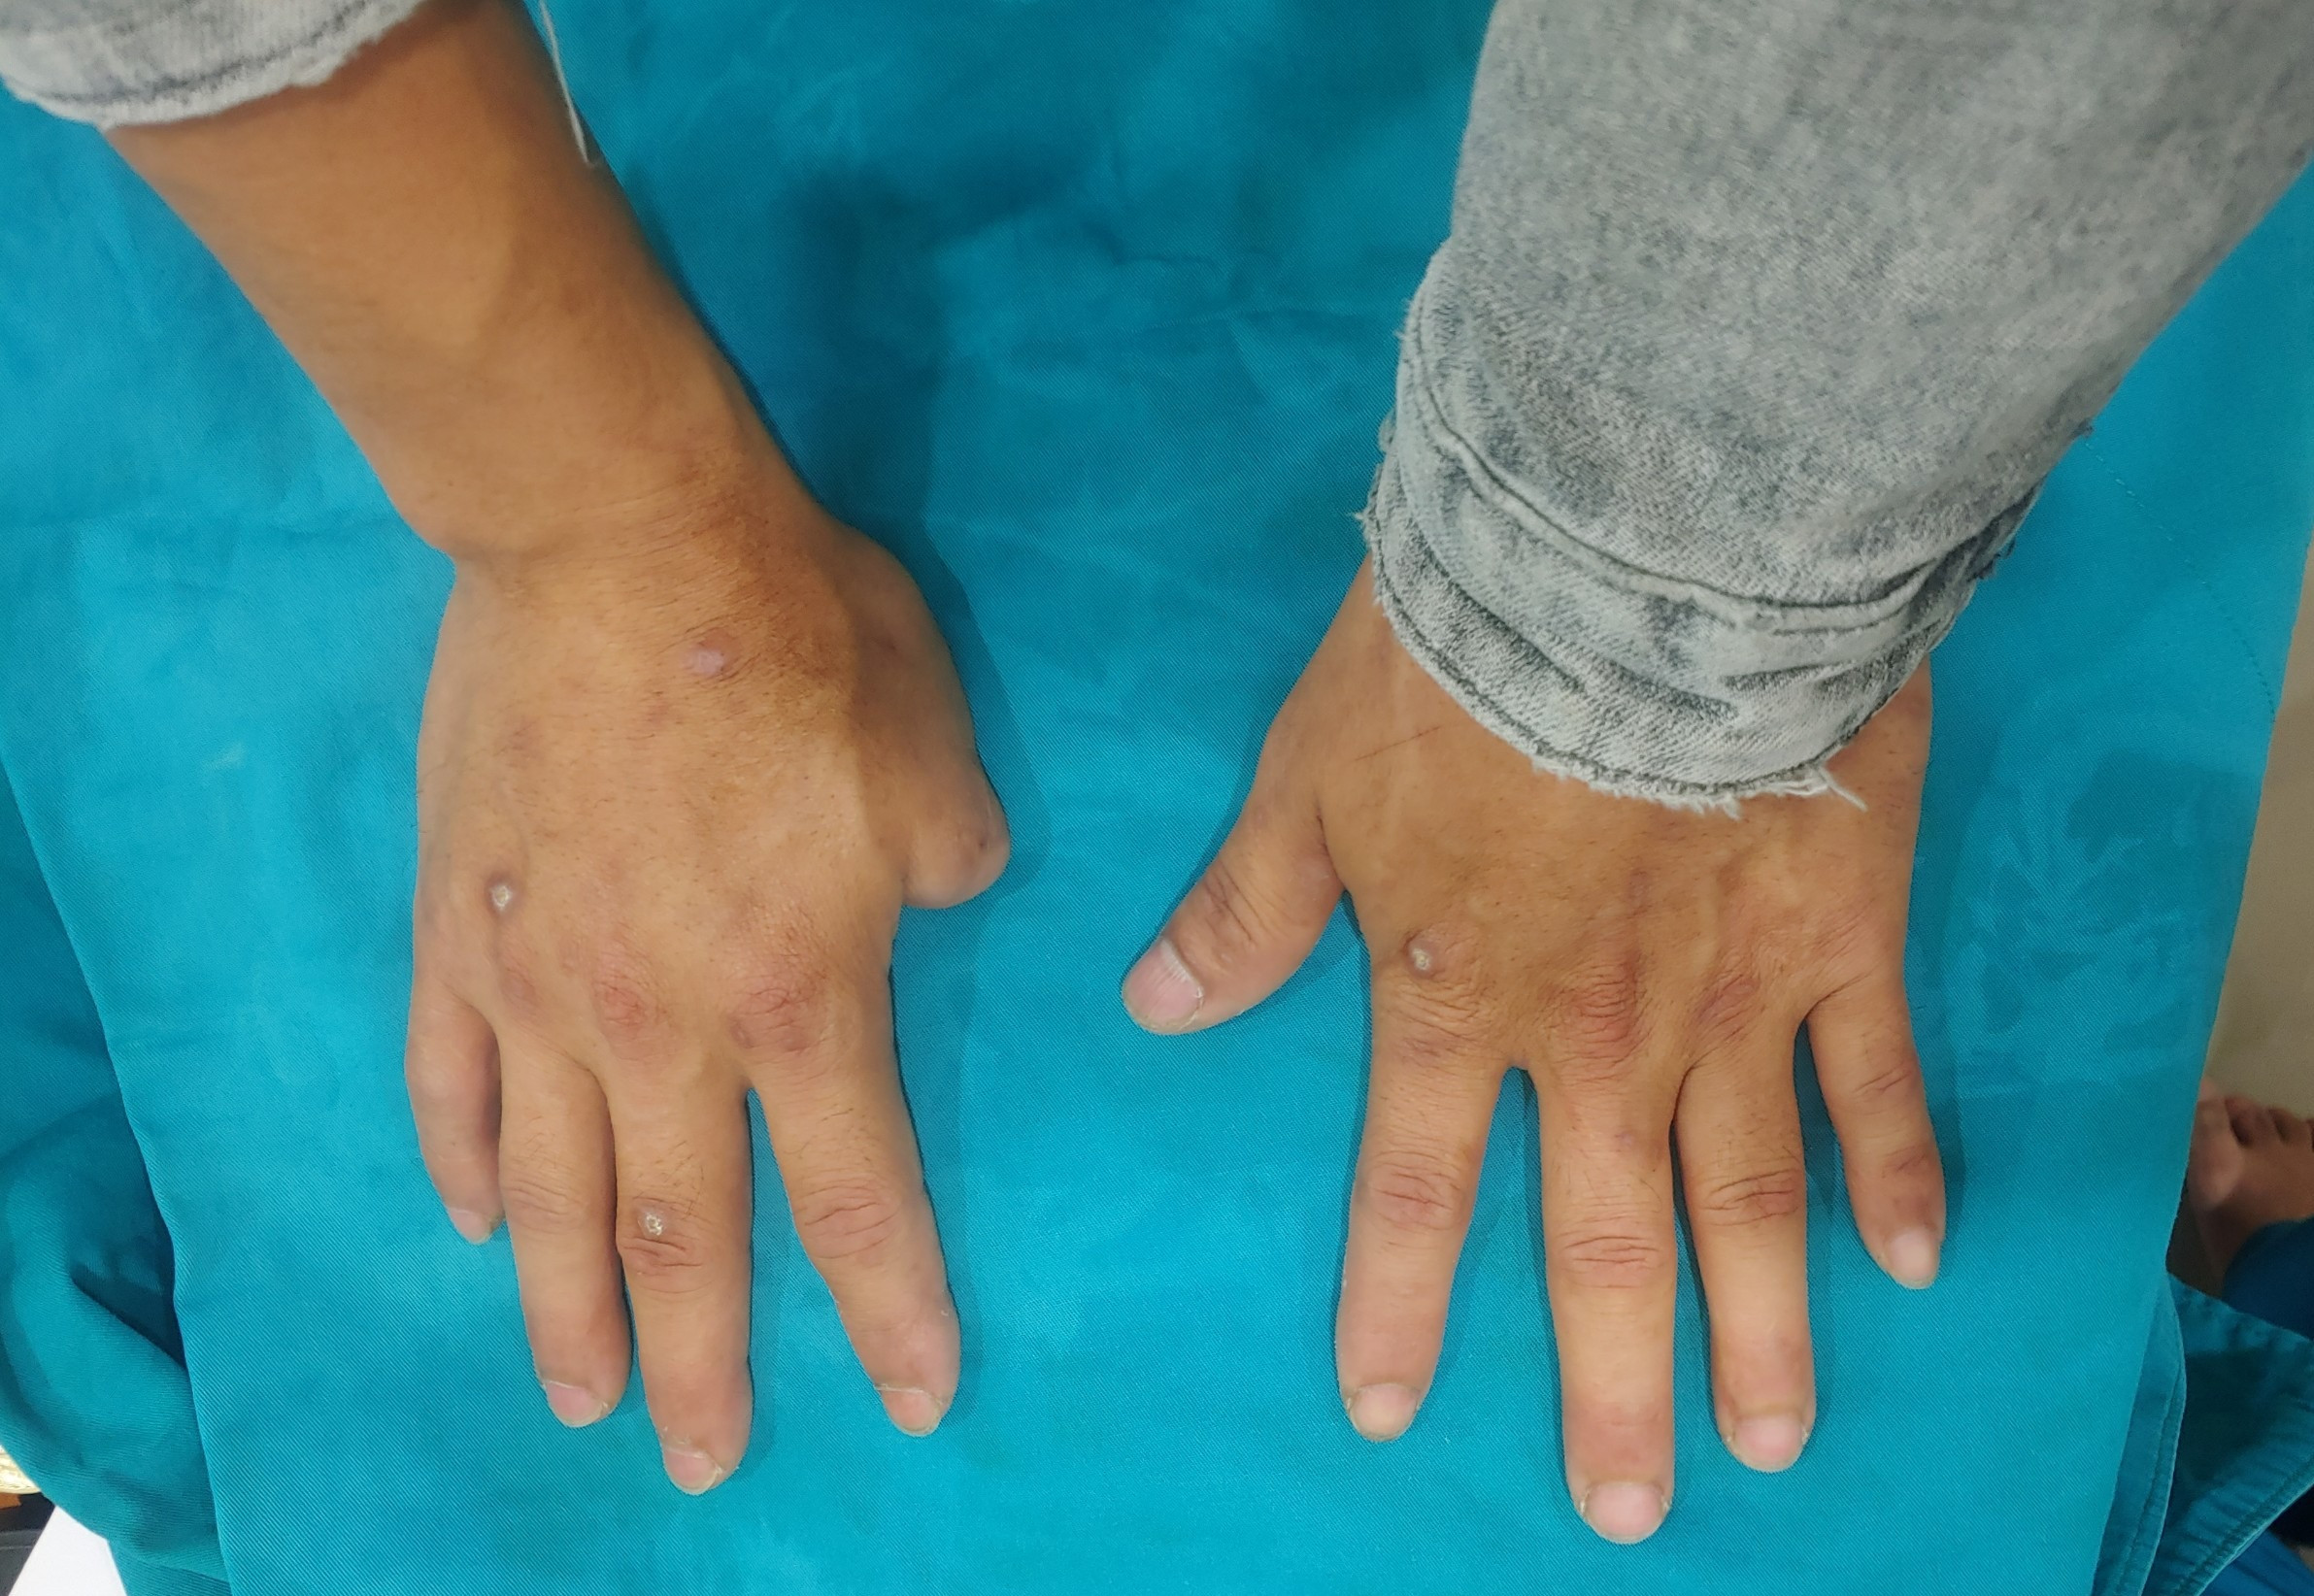 Người đàn ông được ghép ngón tay từ ngón chân sau 10 năm bị tai nạn